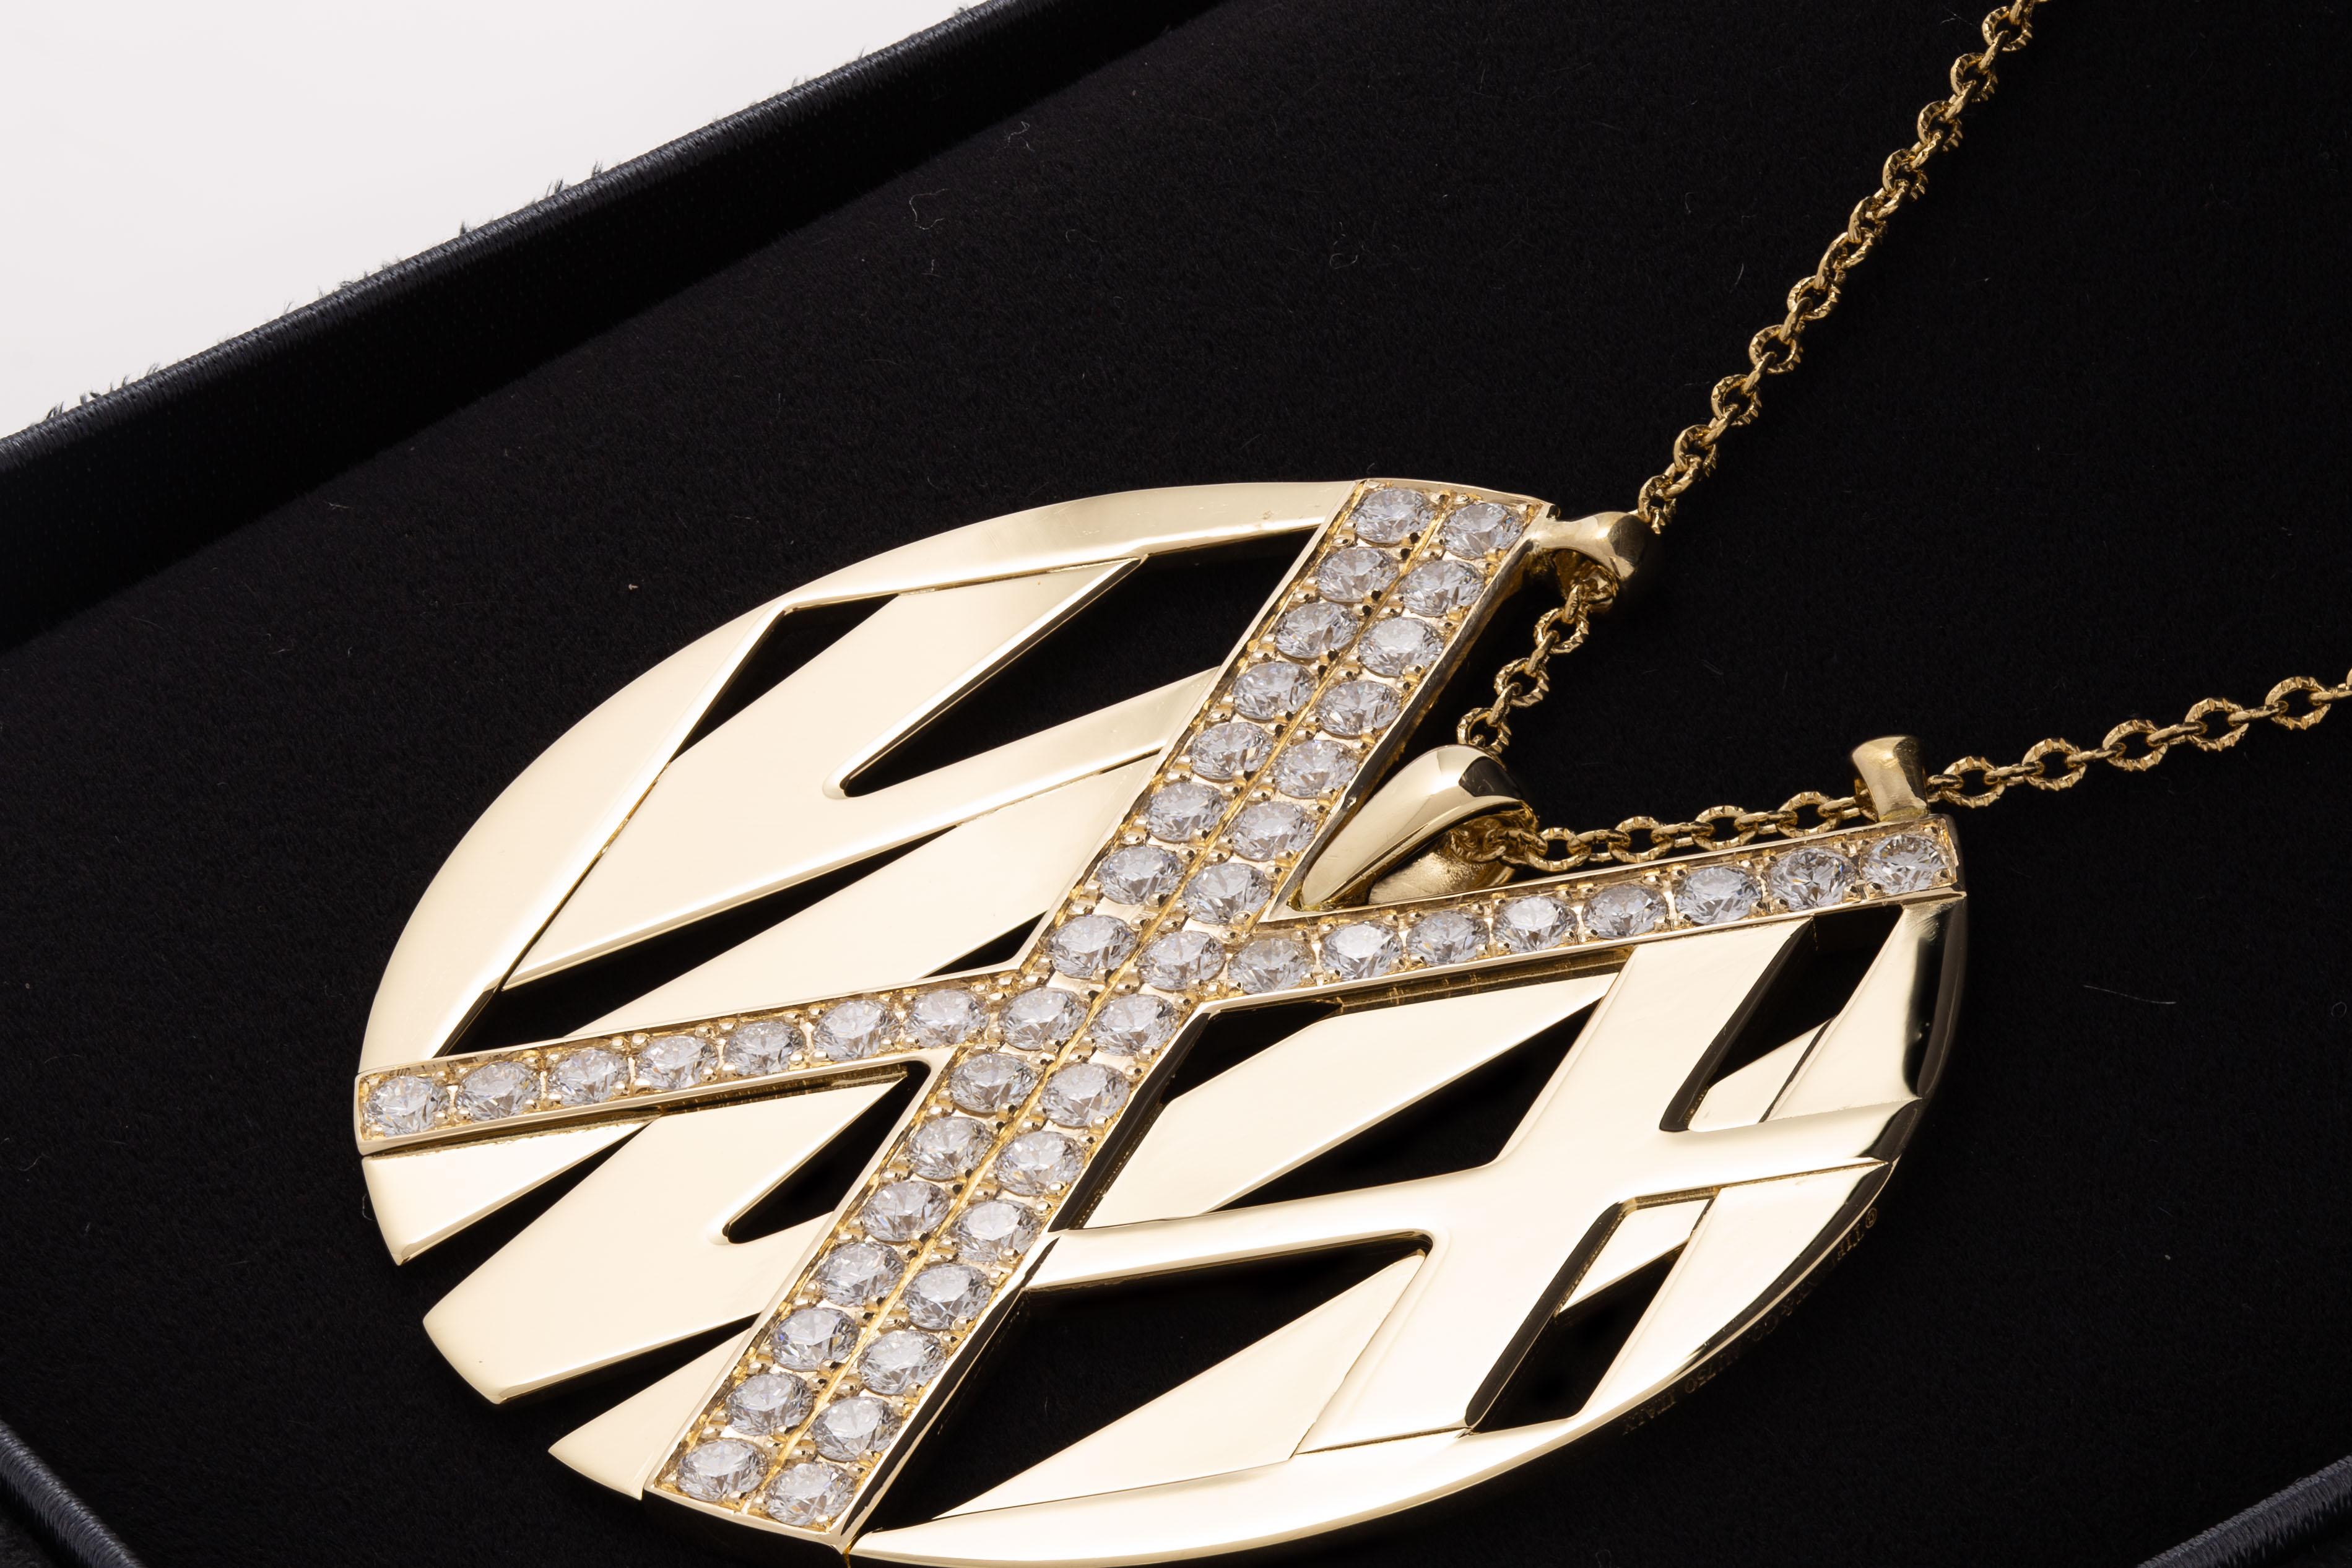 Tiffany & Co. 18K Gelbgold Atlas Große Halskette mit Diamanten.

Auf 36